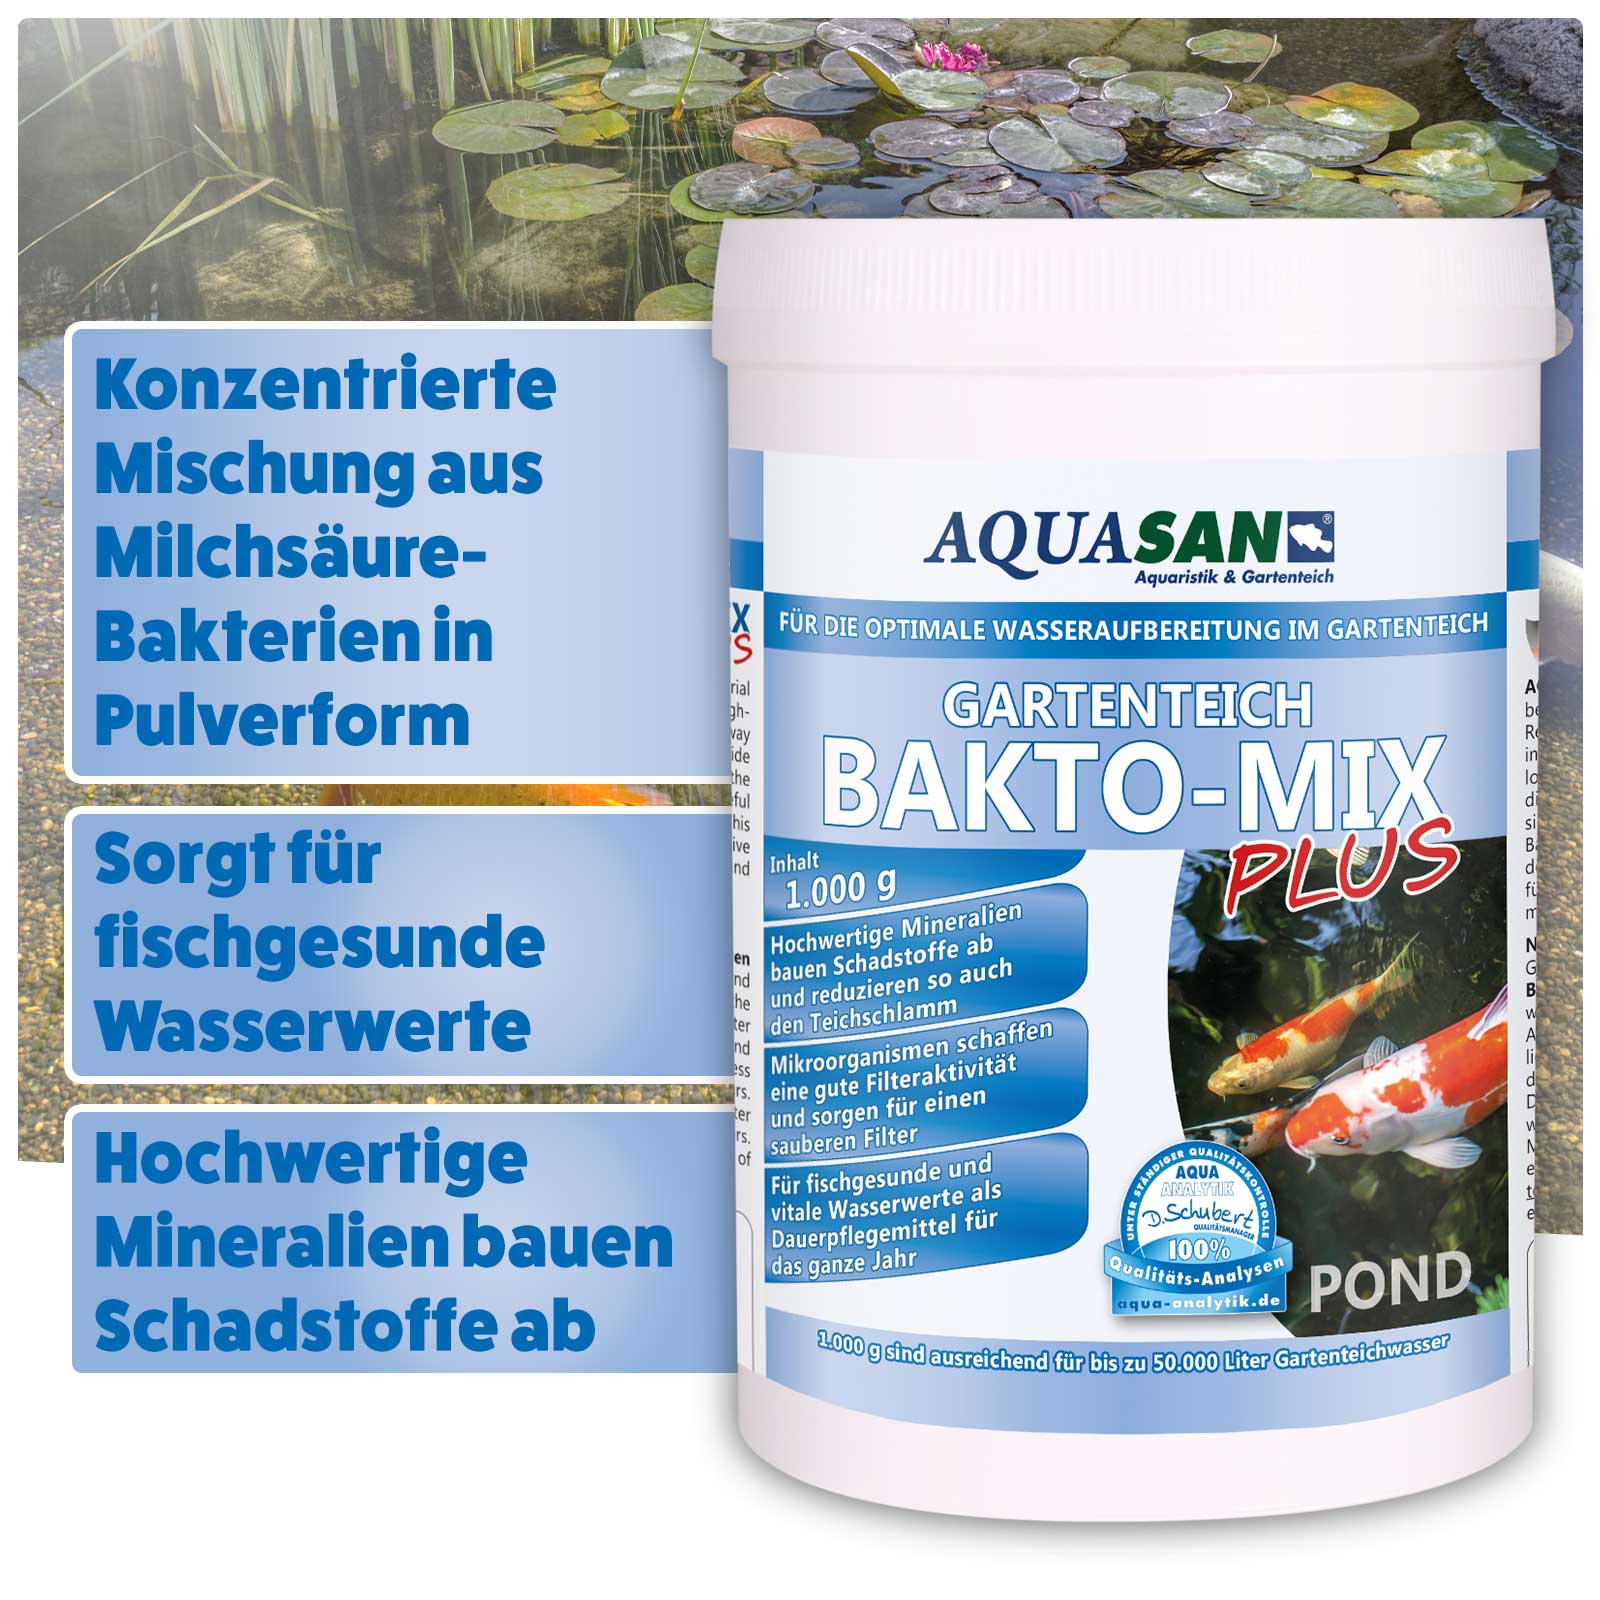 AQUASAN Bakto-Mix PLUS für Gartenteiche